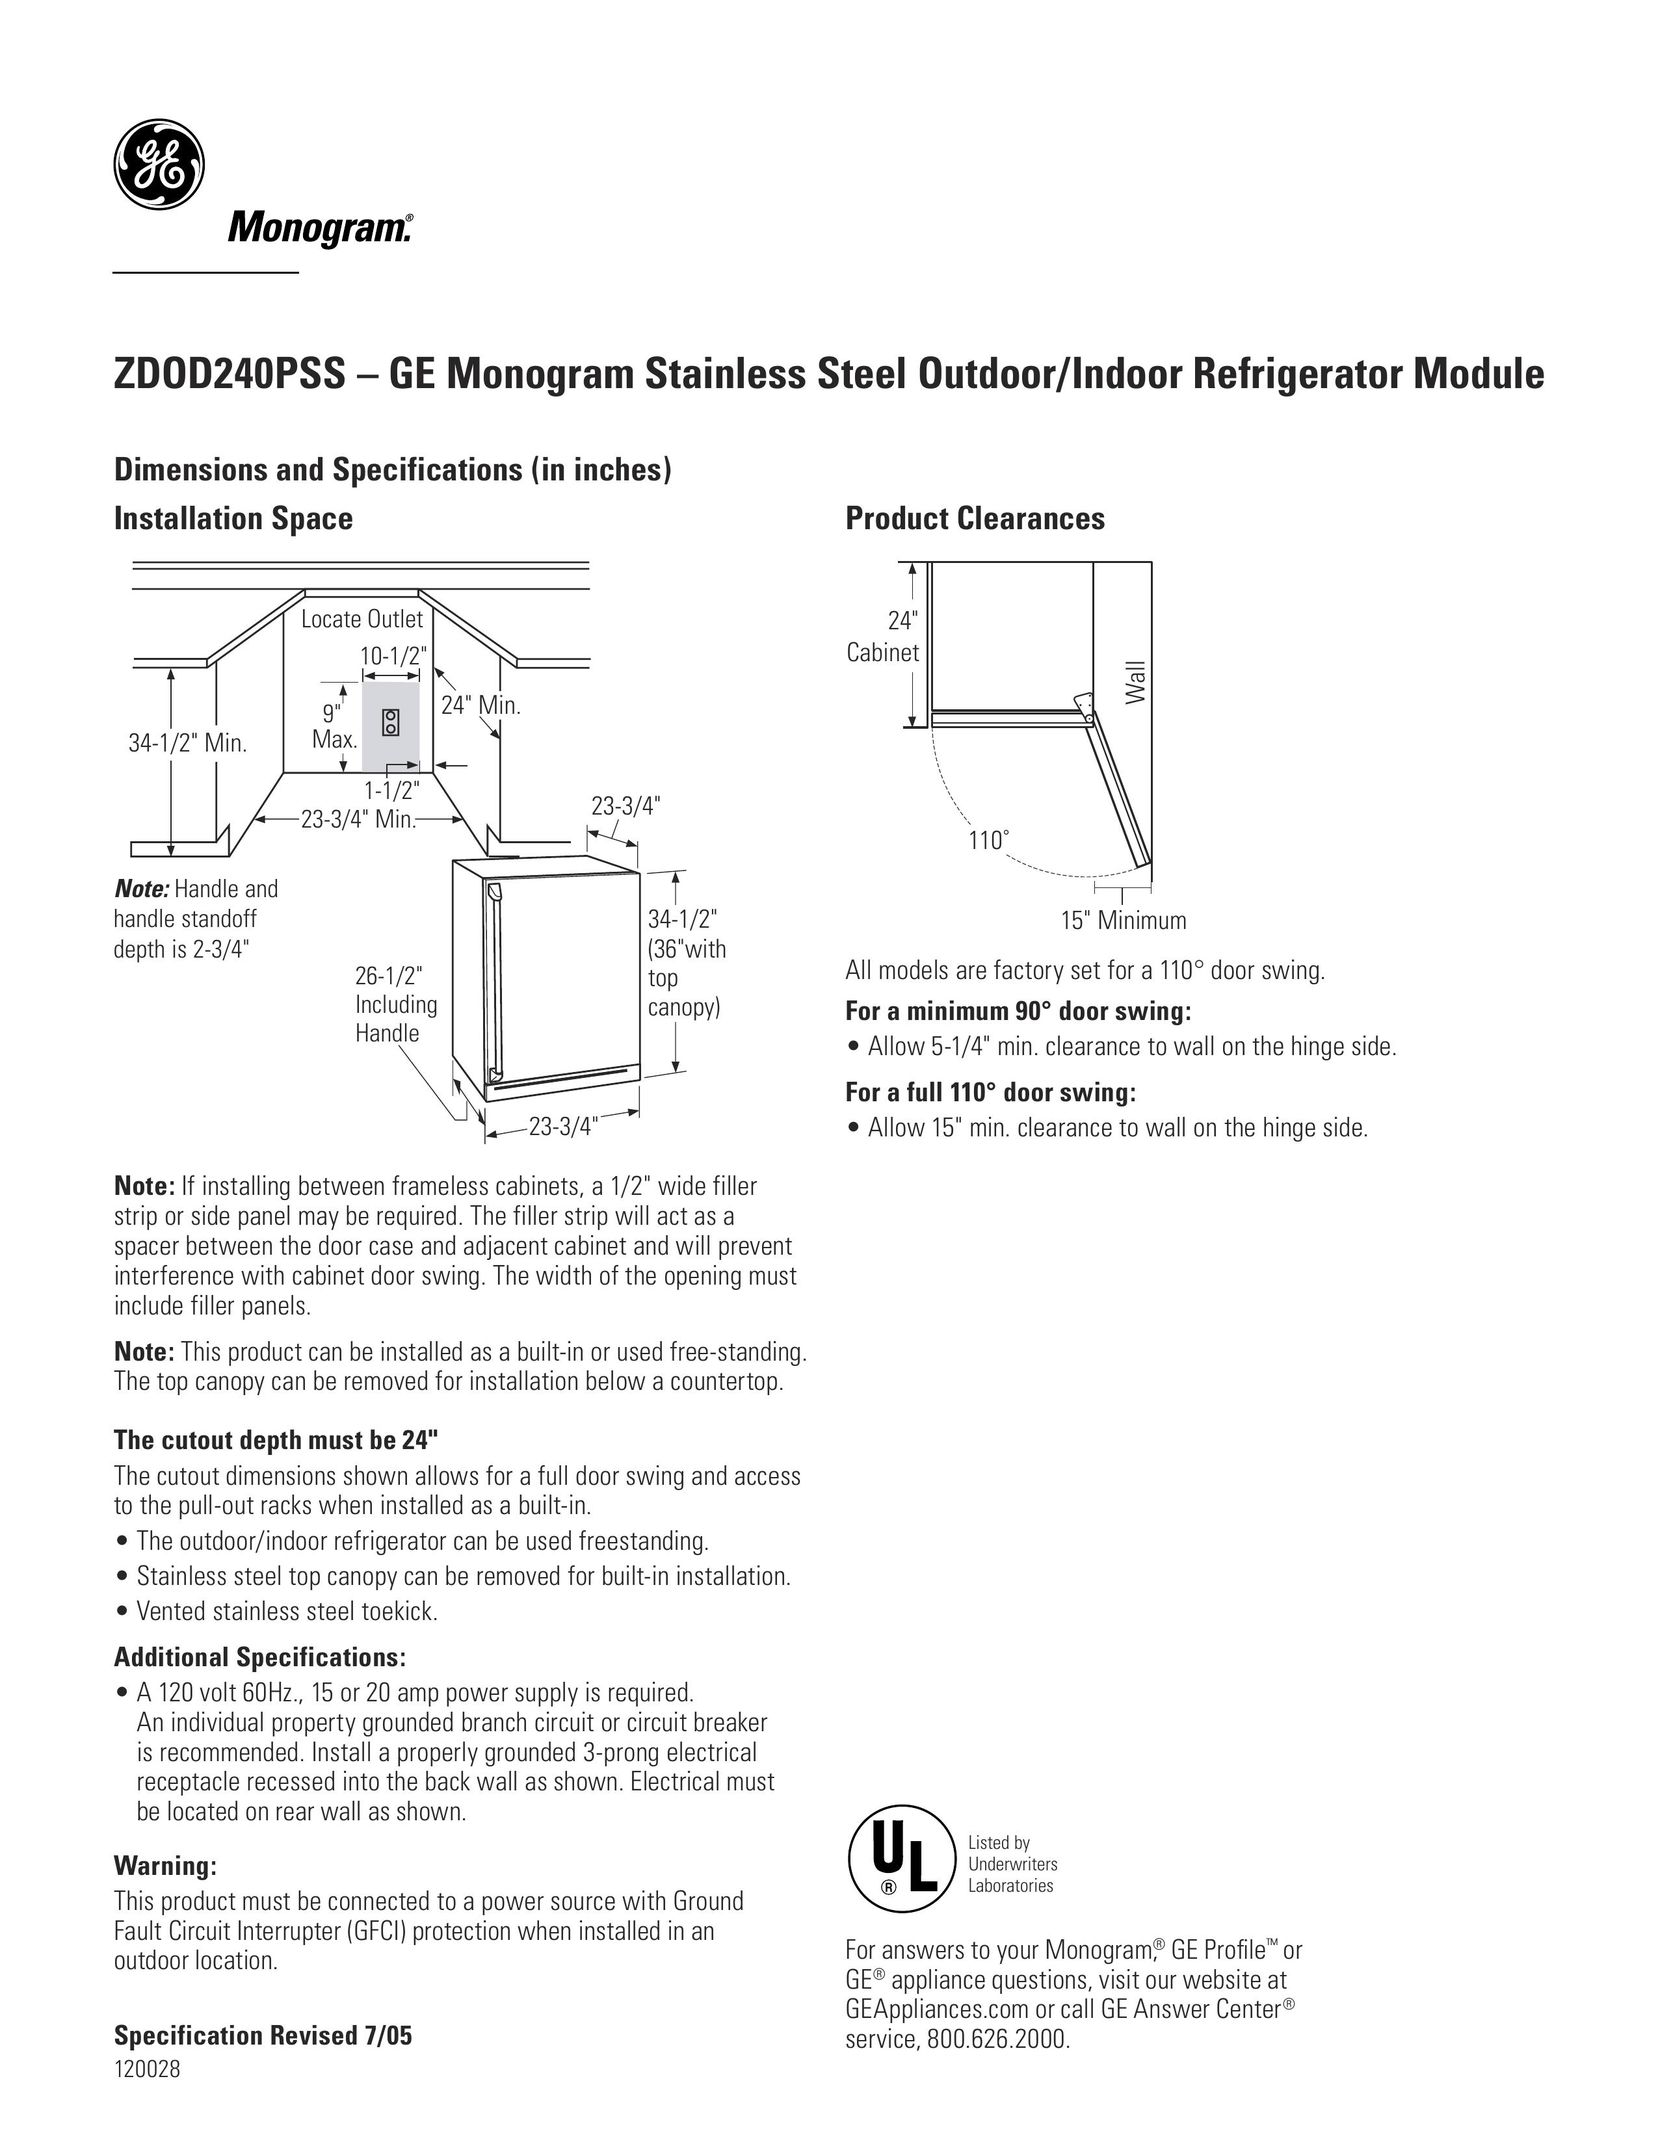 GE Monogram ZDOD240PSS Beverage Dispenser User Manual